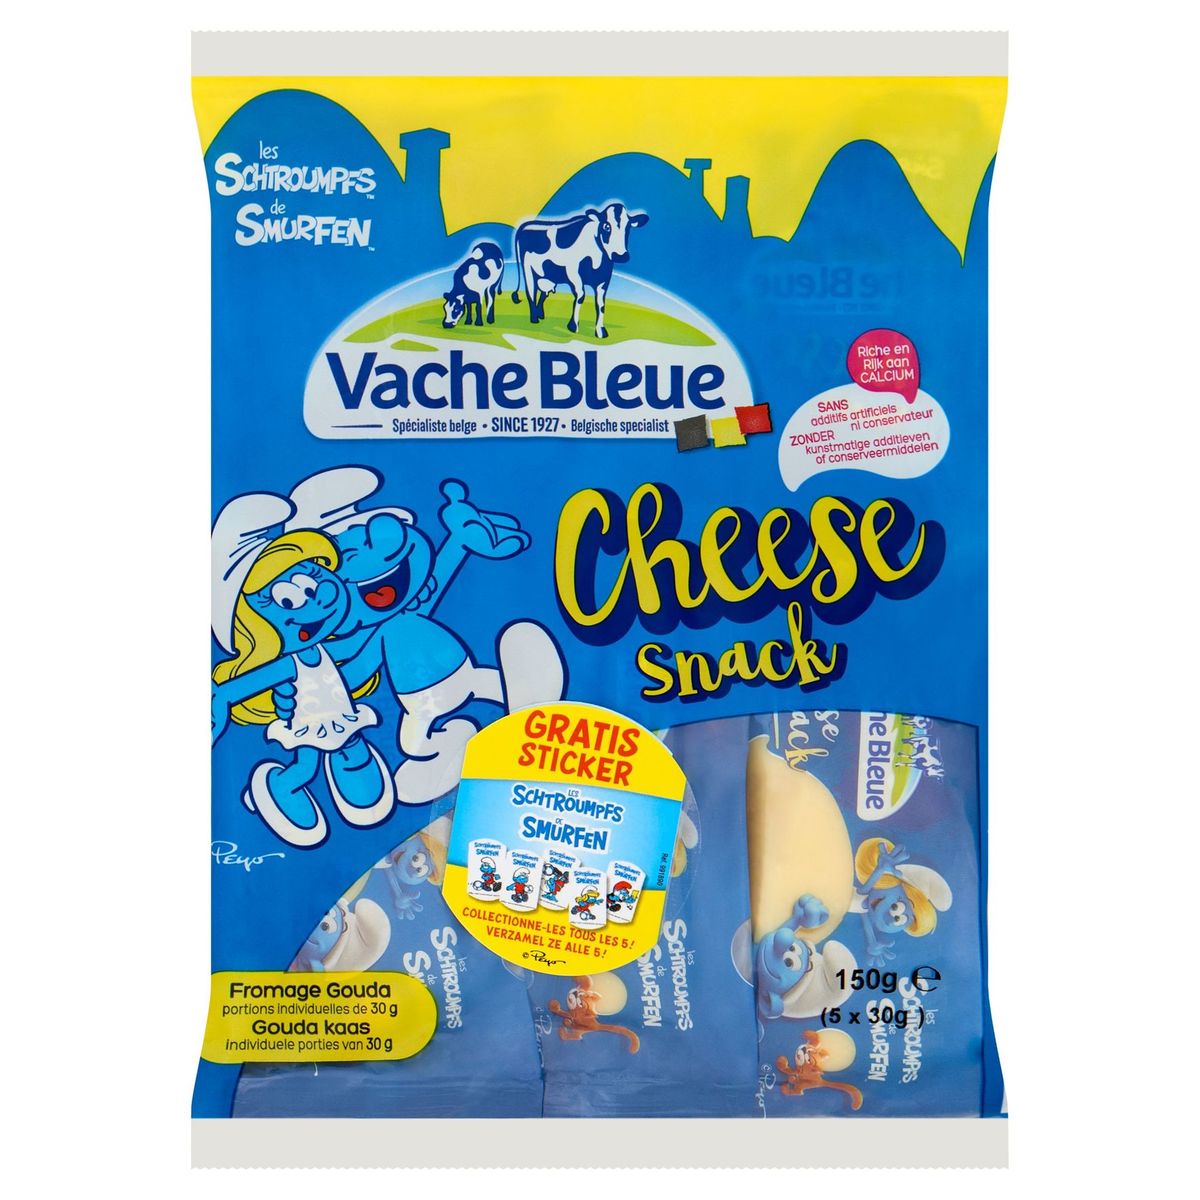 Vache Bleue Cheese Snack de Smurfen 5 x 30 g